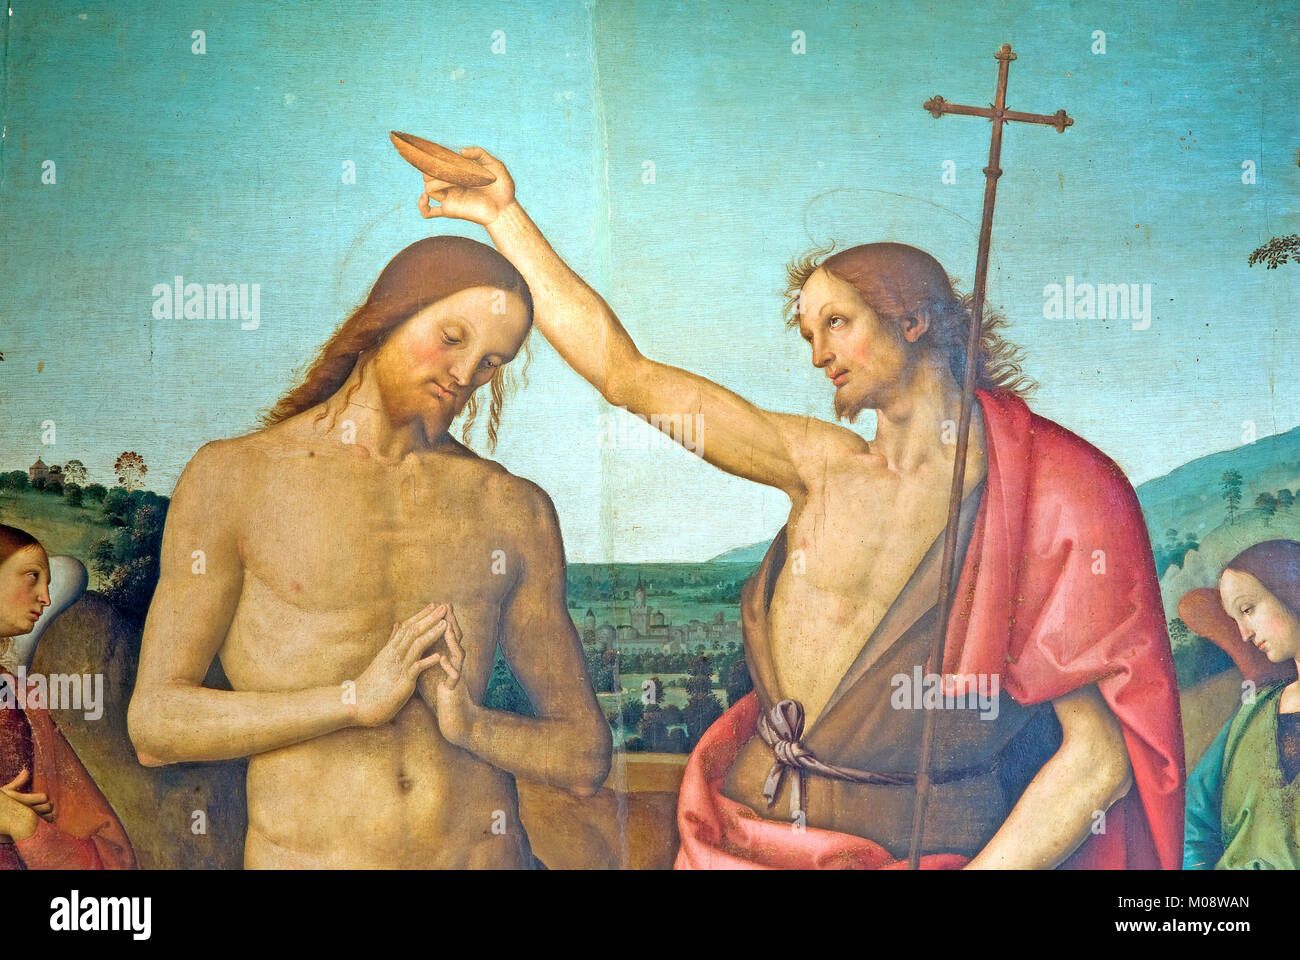 Detail des Gemäldes "Il Battesimo di Cristo", die Taufe von Jesus Christus, durch Pietro Vannucci (wie Il Perugino bekannt), Città della Pieve, Umbrien, Italien Stockfoto